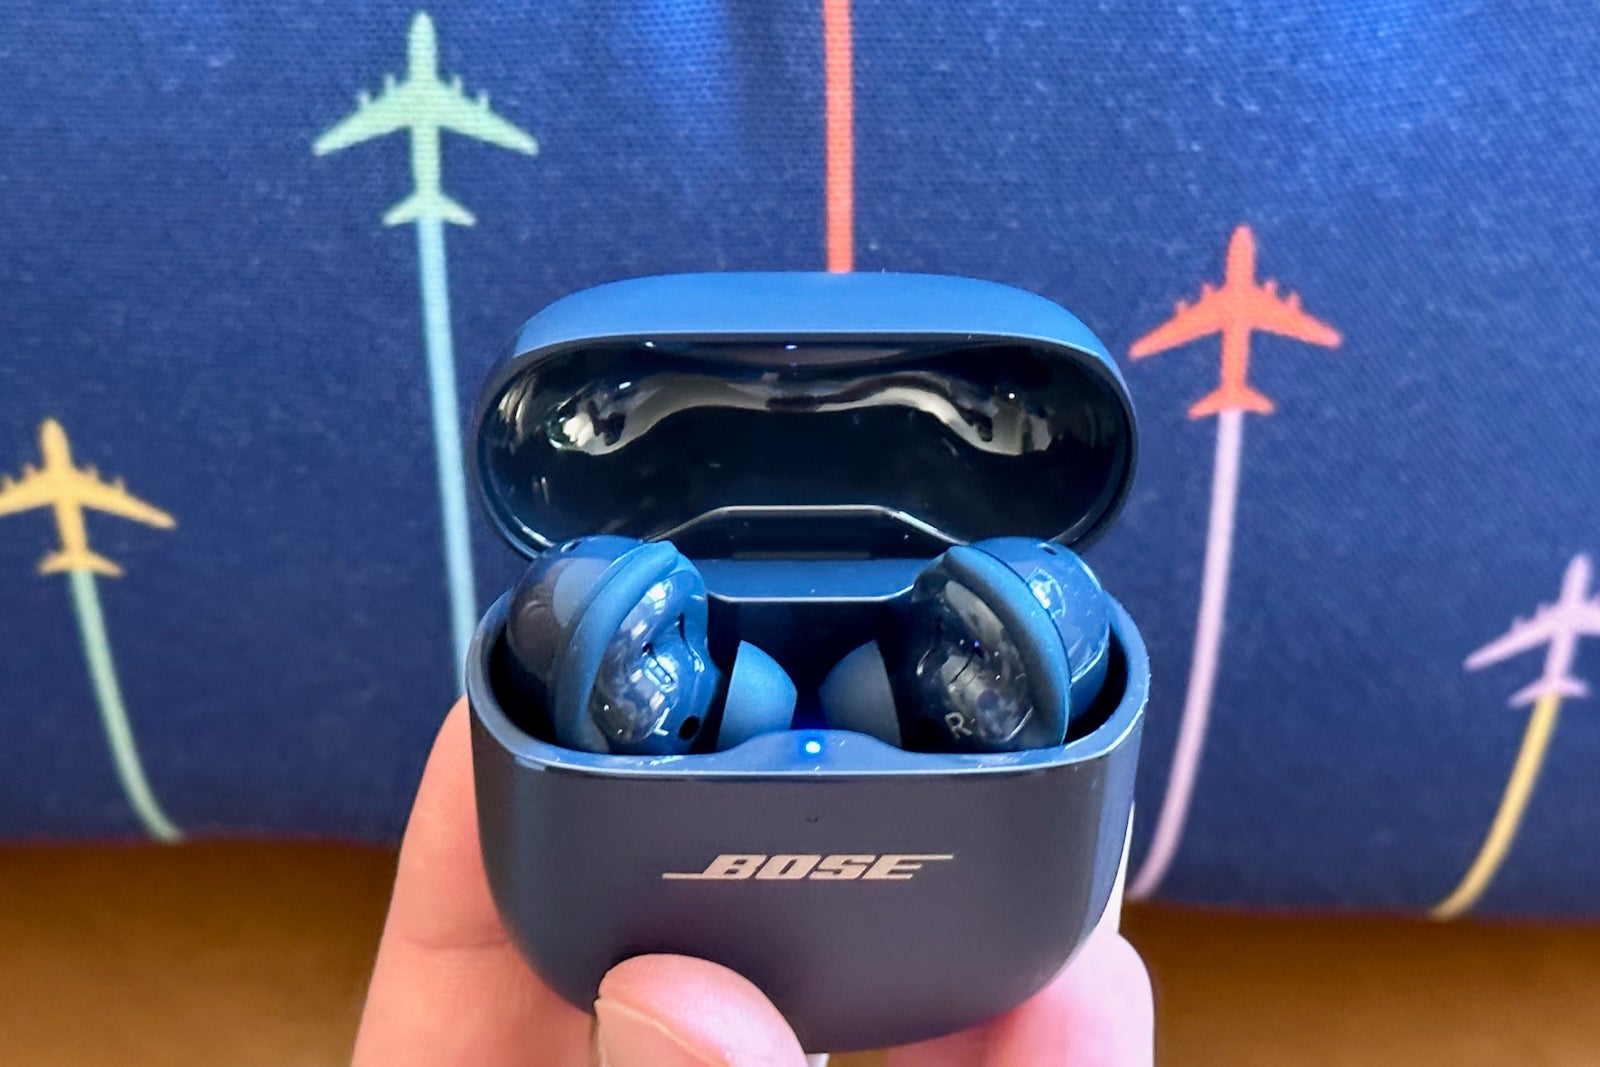 sony bluetooth headphones travel